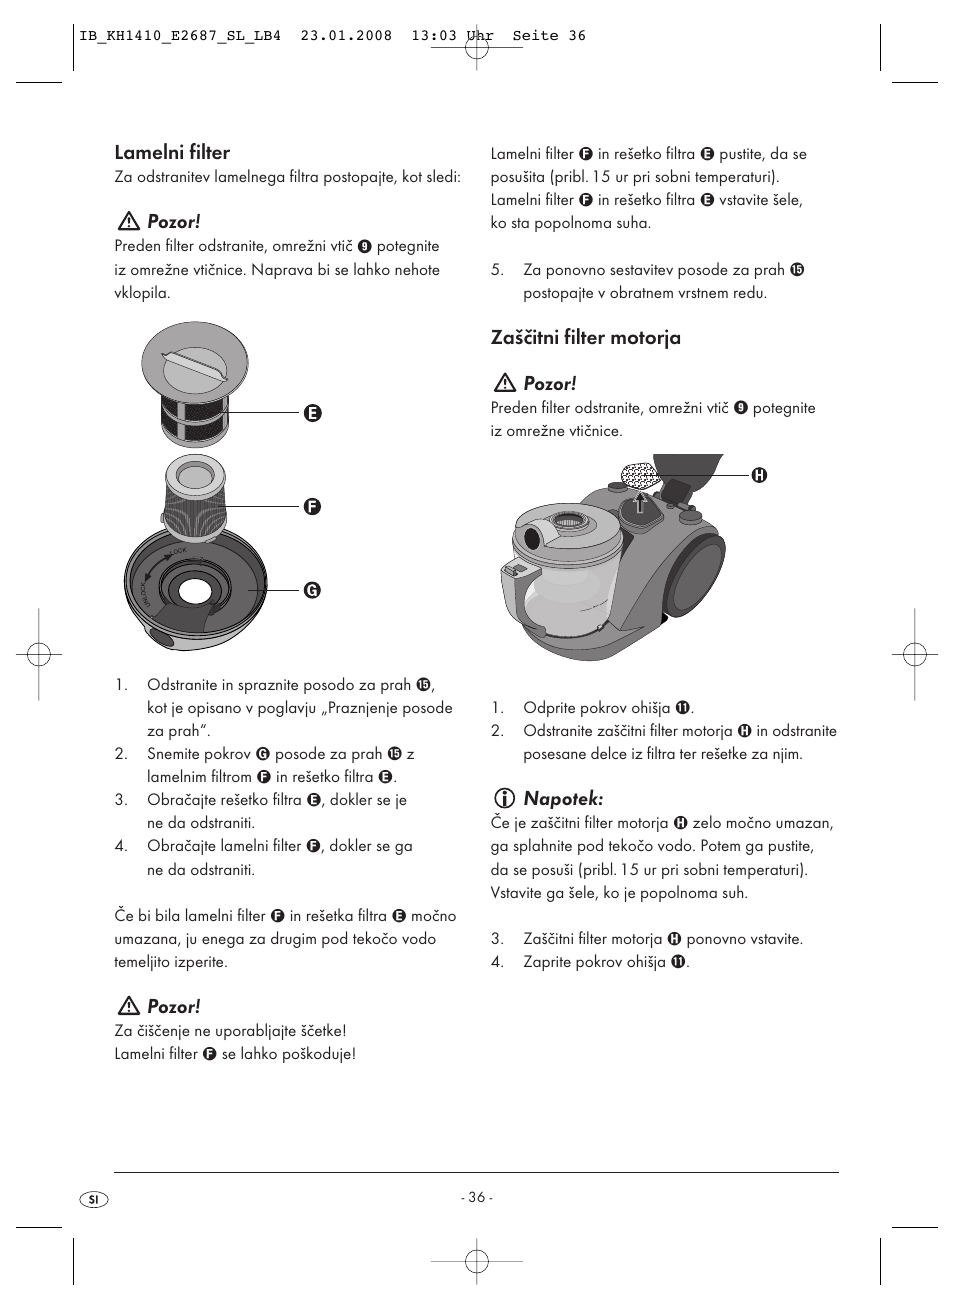 Lamelni filter, Pozor, Zaščitni filter motorja pozor | Kompernass KH 1410  User Manual | Page 38 / 82